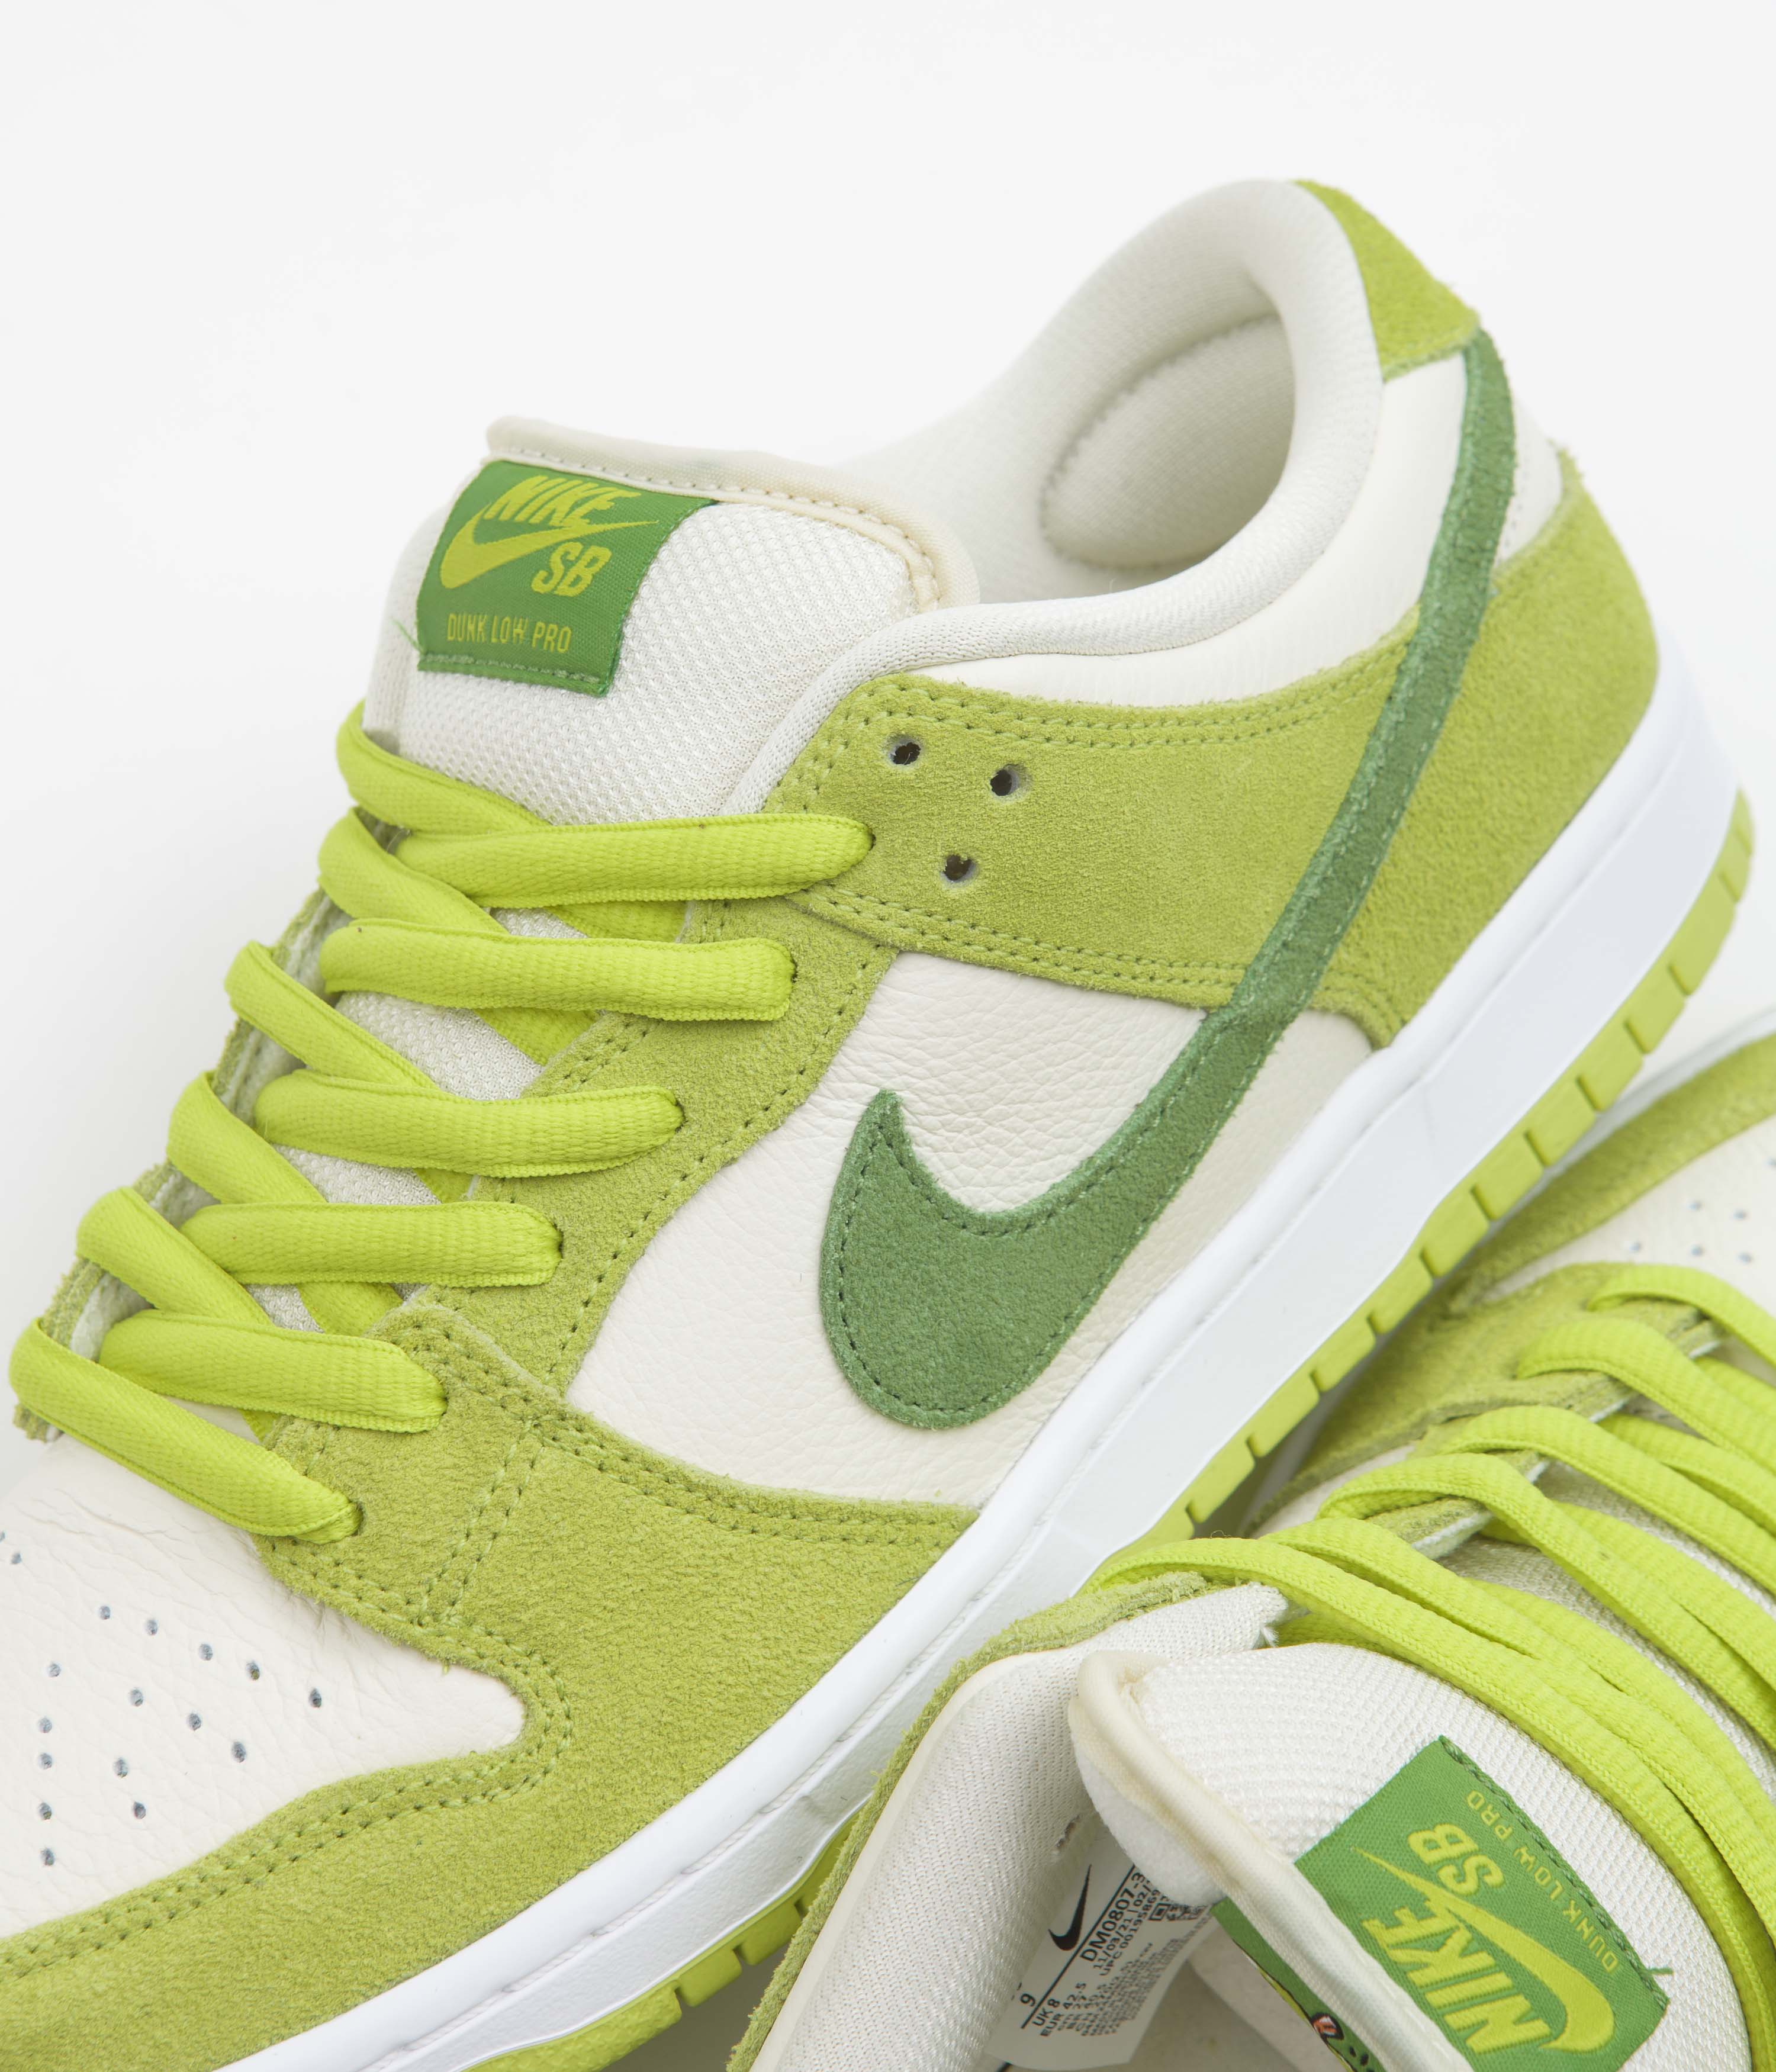 Nike SB Dunk Low Pro Apple Shoes - Atomic Green / Chlorophyll - Atomic ...